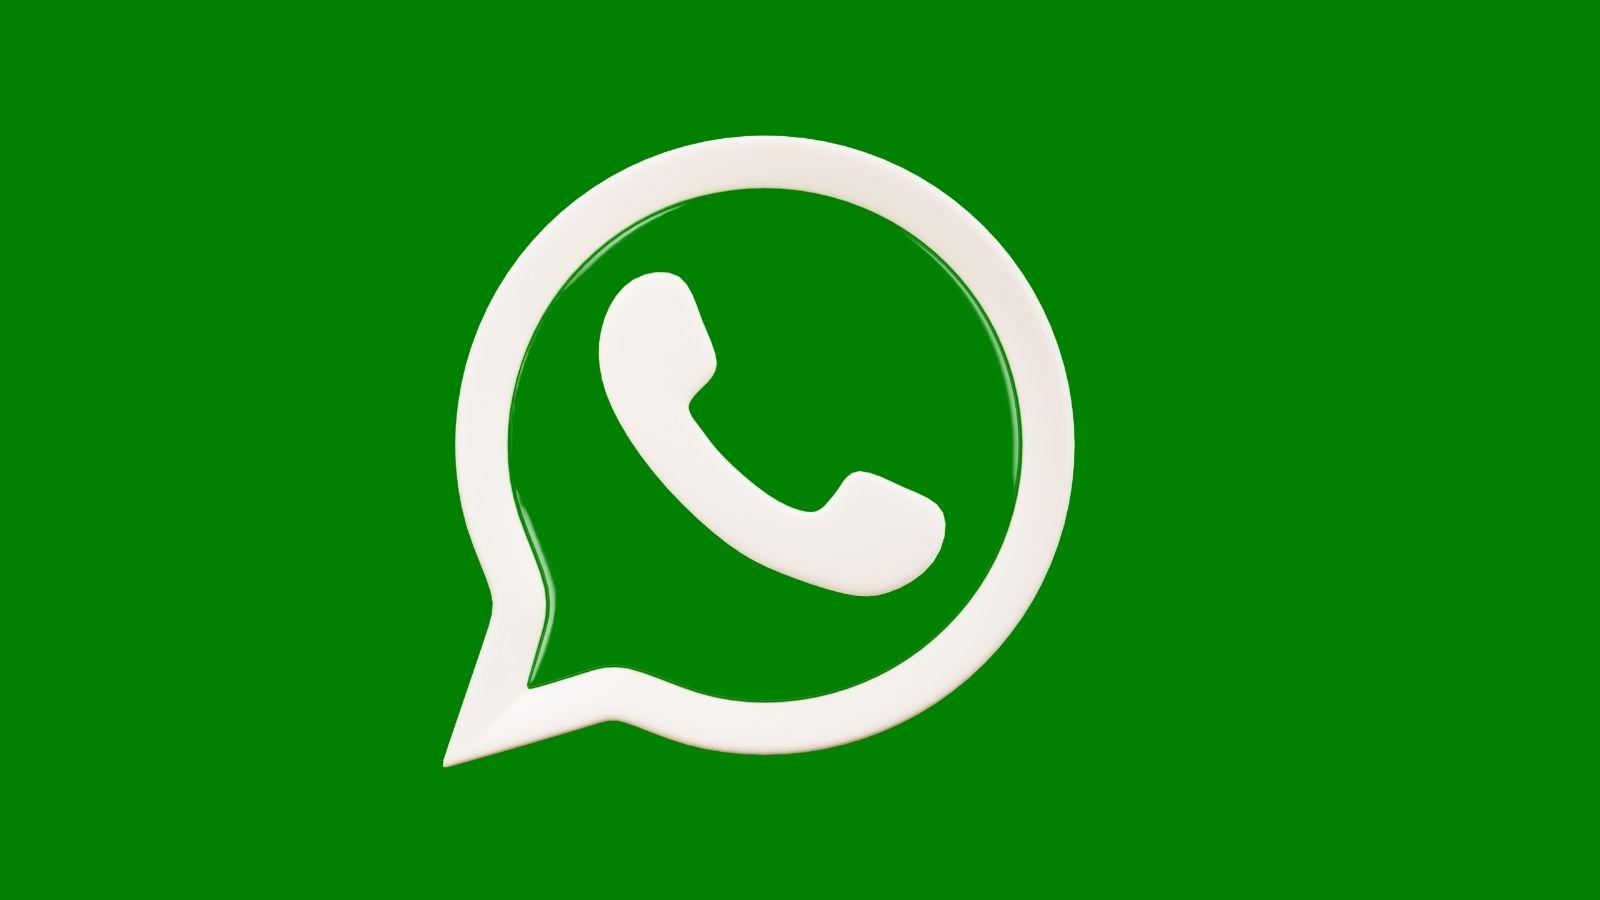 WhatsApp “e-posta ile doğrulama” özelliğini iOS tarafında aktif etti